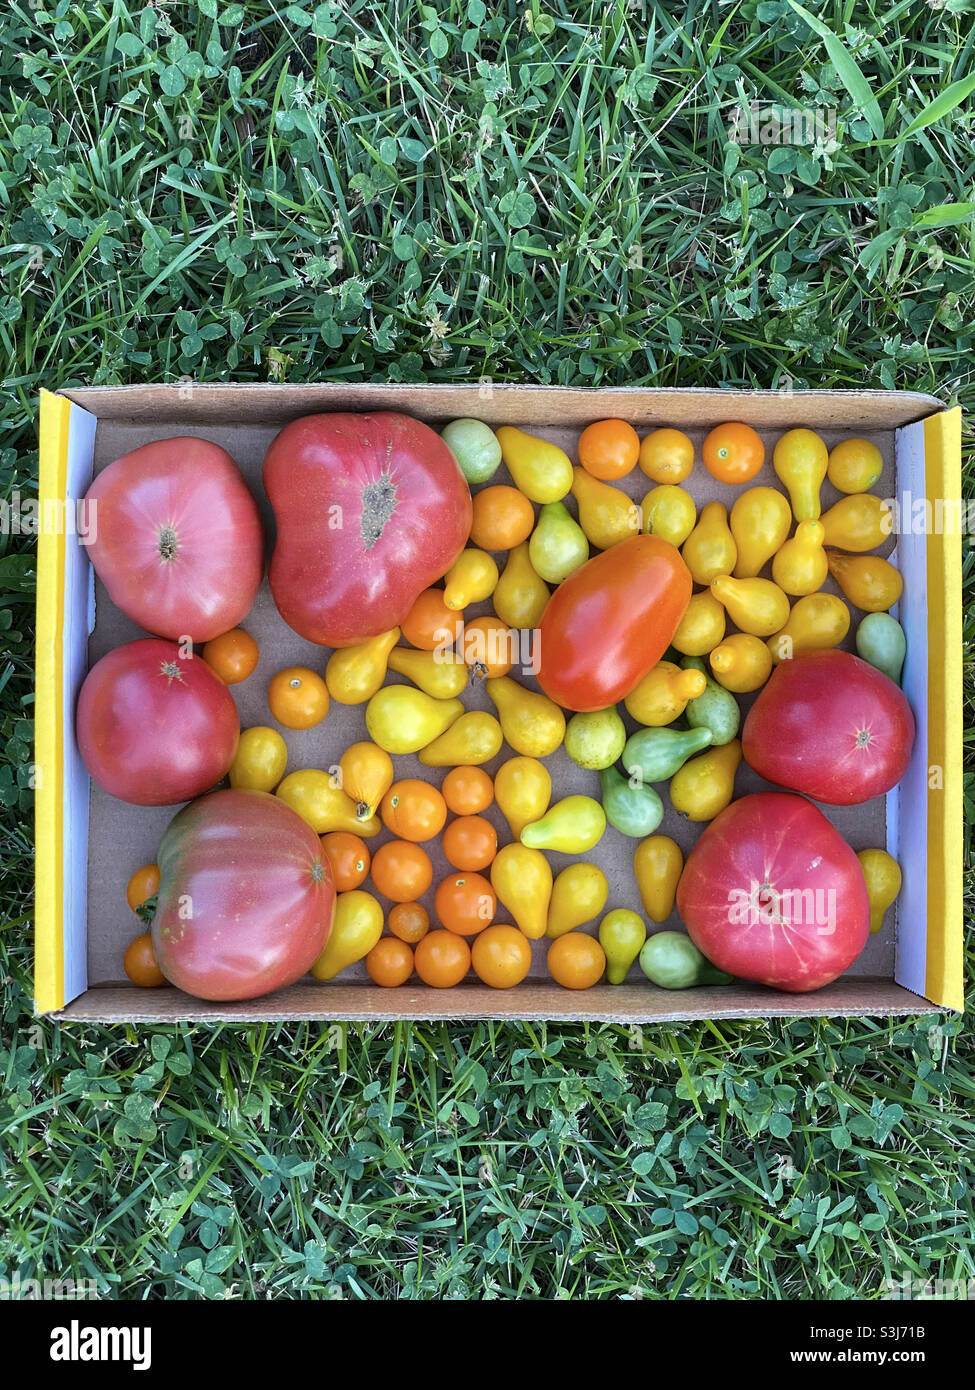 Eine Schachtel mit einer Vielzahl von frisch gepflückten Bio-Tomaten auf einem frischen grünen Rasen. Mortgage Lifter, Cherokee Purple, Sun Sugar Cherry, Yellow Pear und Roma-Tomaten. Stockfoto